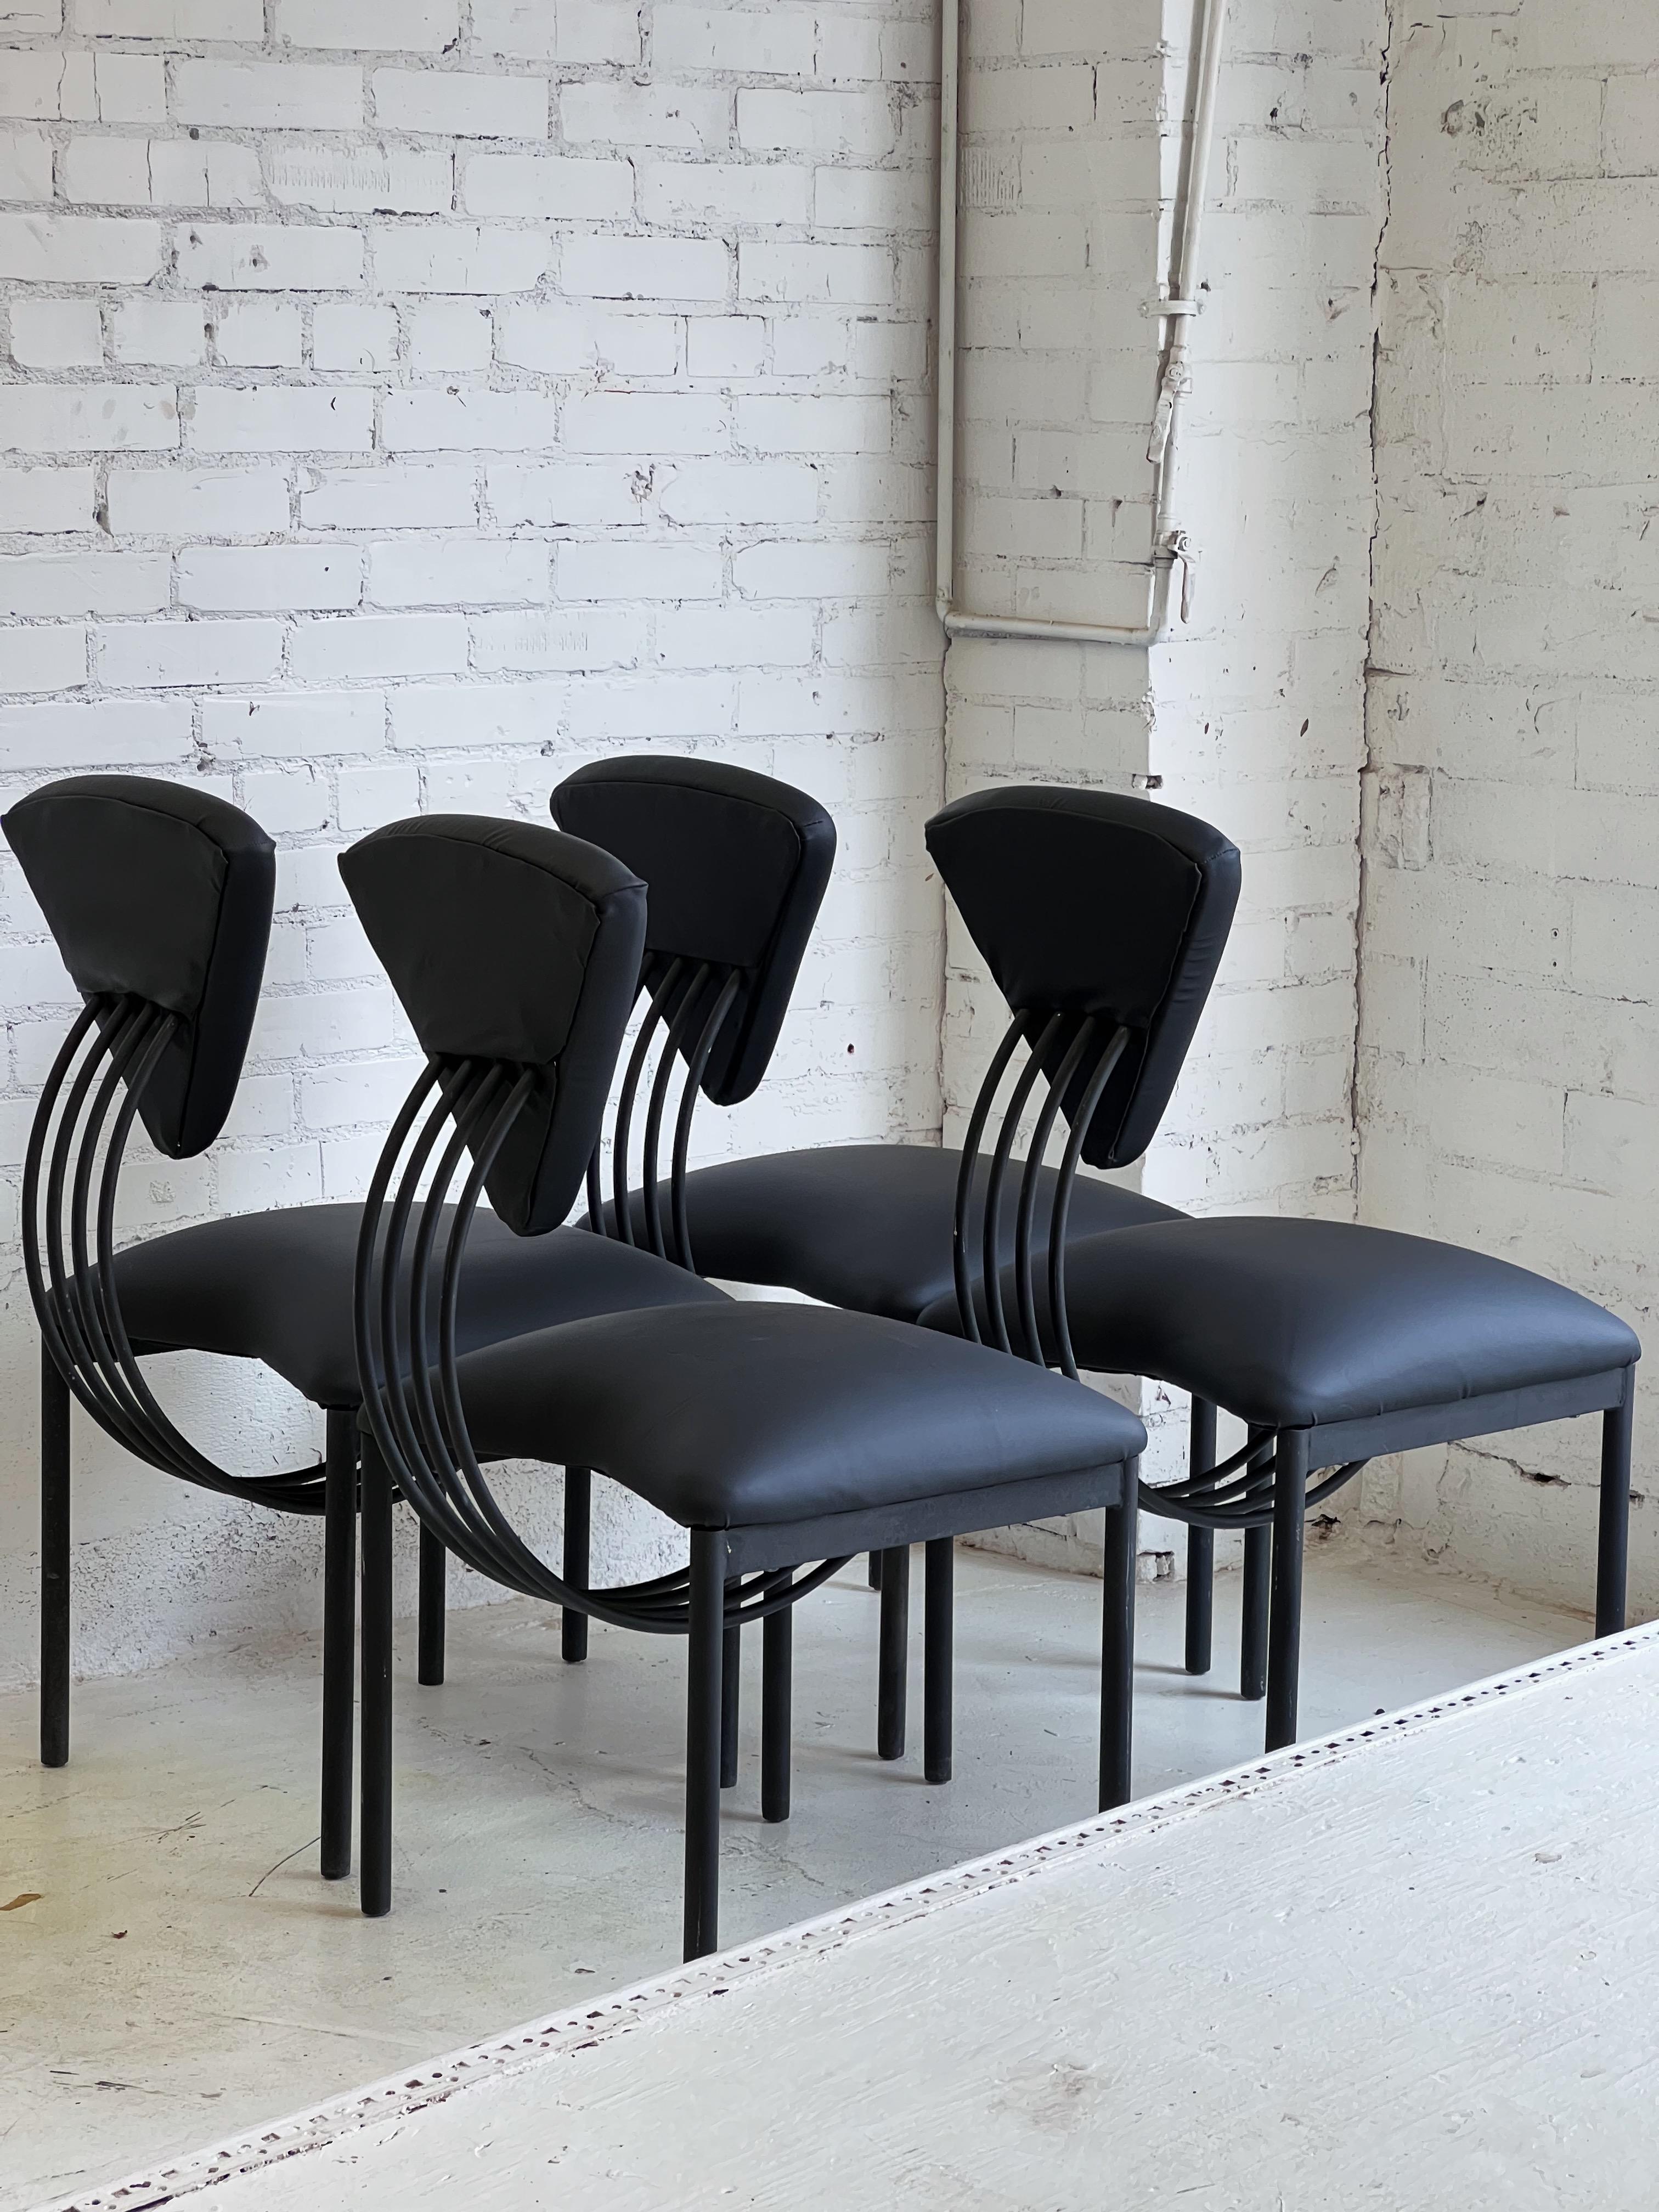 Stühle im Memphis-Stil im Stil von Ettore Sottsass in monochromem Schwarz.

Unverwechselbare Silhouette mit sehr weicher Polsterung, die das seltene Doppelspiel von markantem Design und Komfort bietet.

Die Stühle sind hochwertig gebaut und schwer.